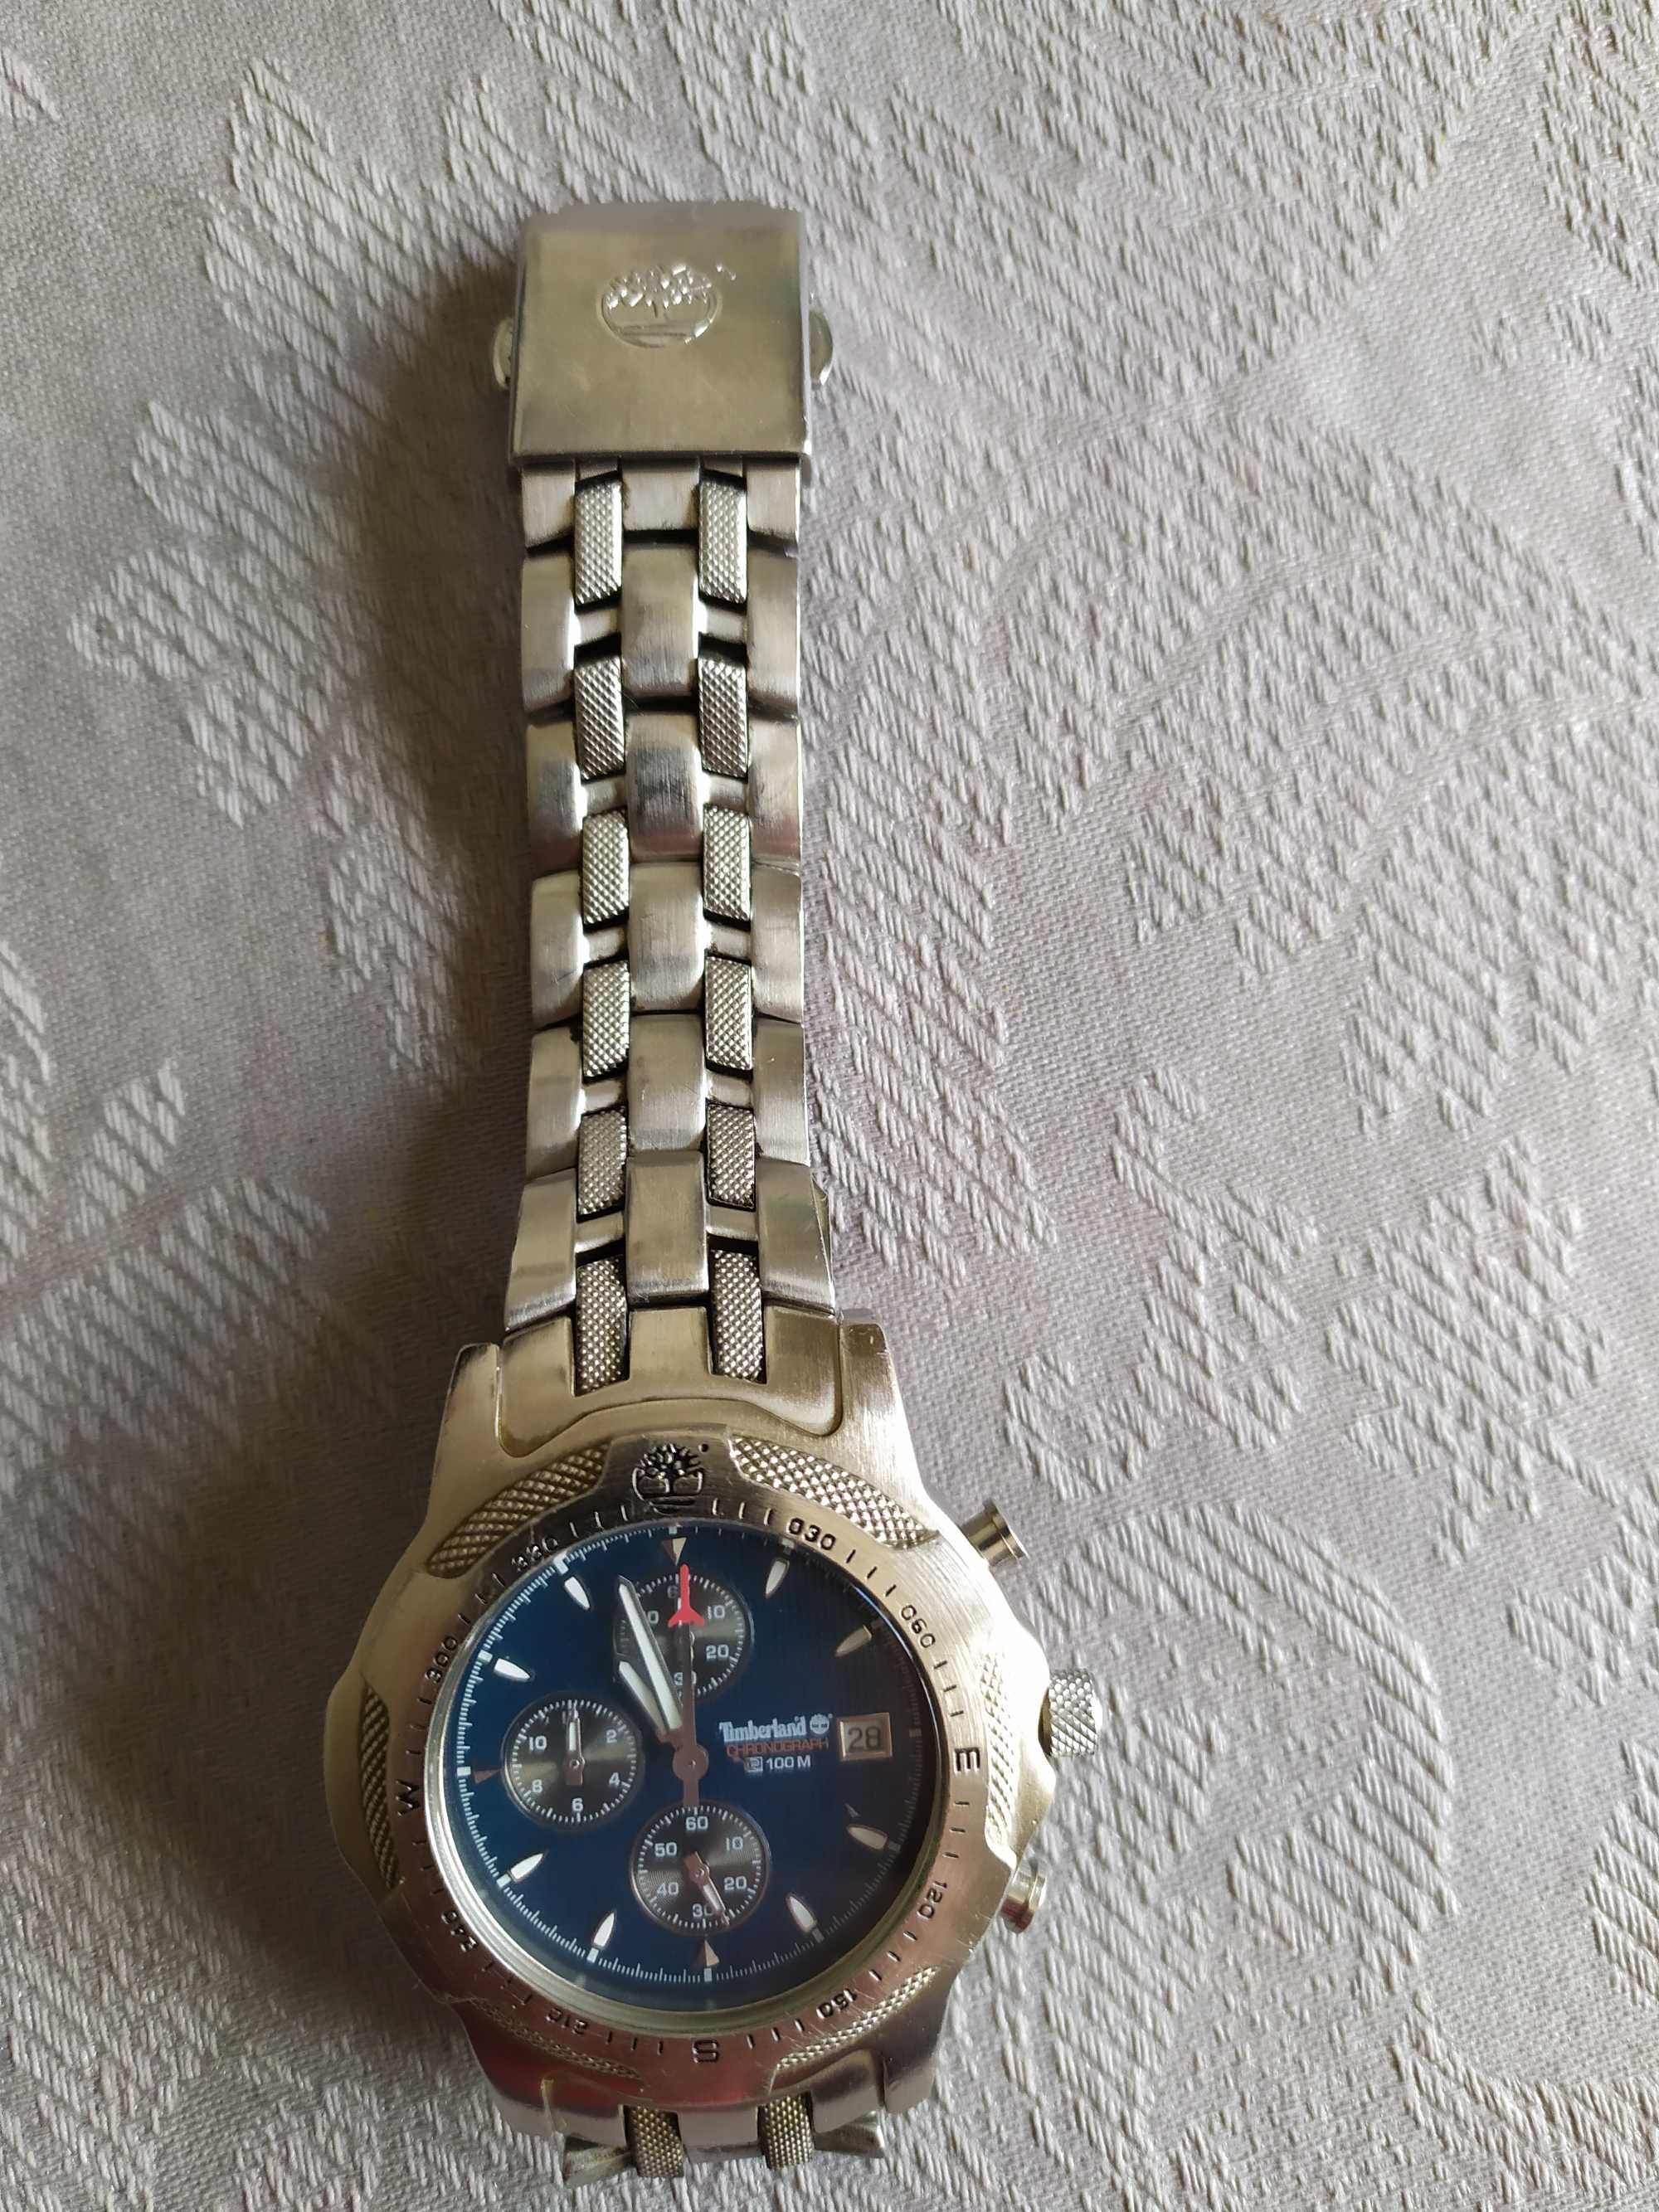 Relógio Timberland, bracelete metálica, usado mas em bom estado